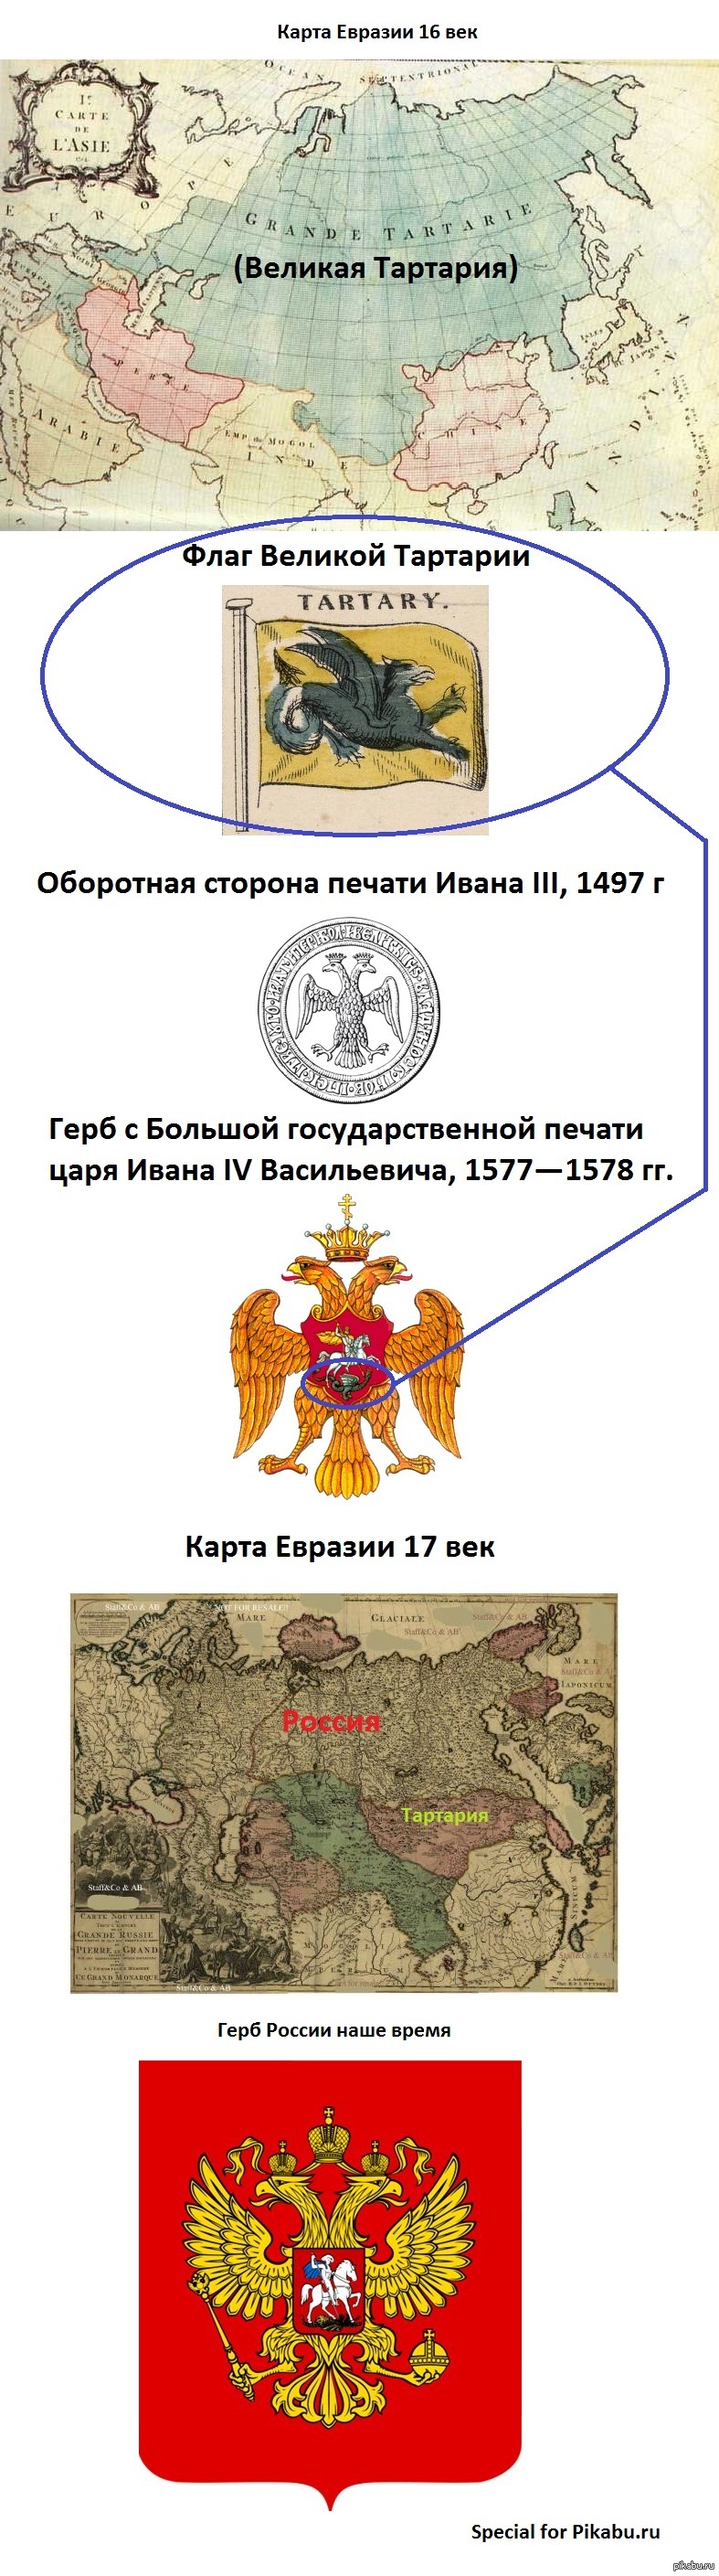 Тартария флаг и герб